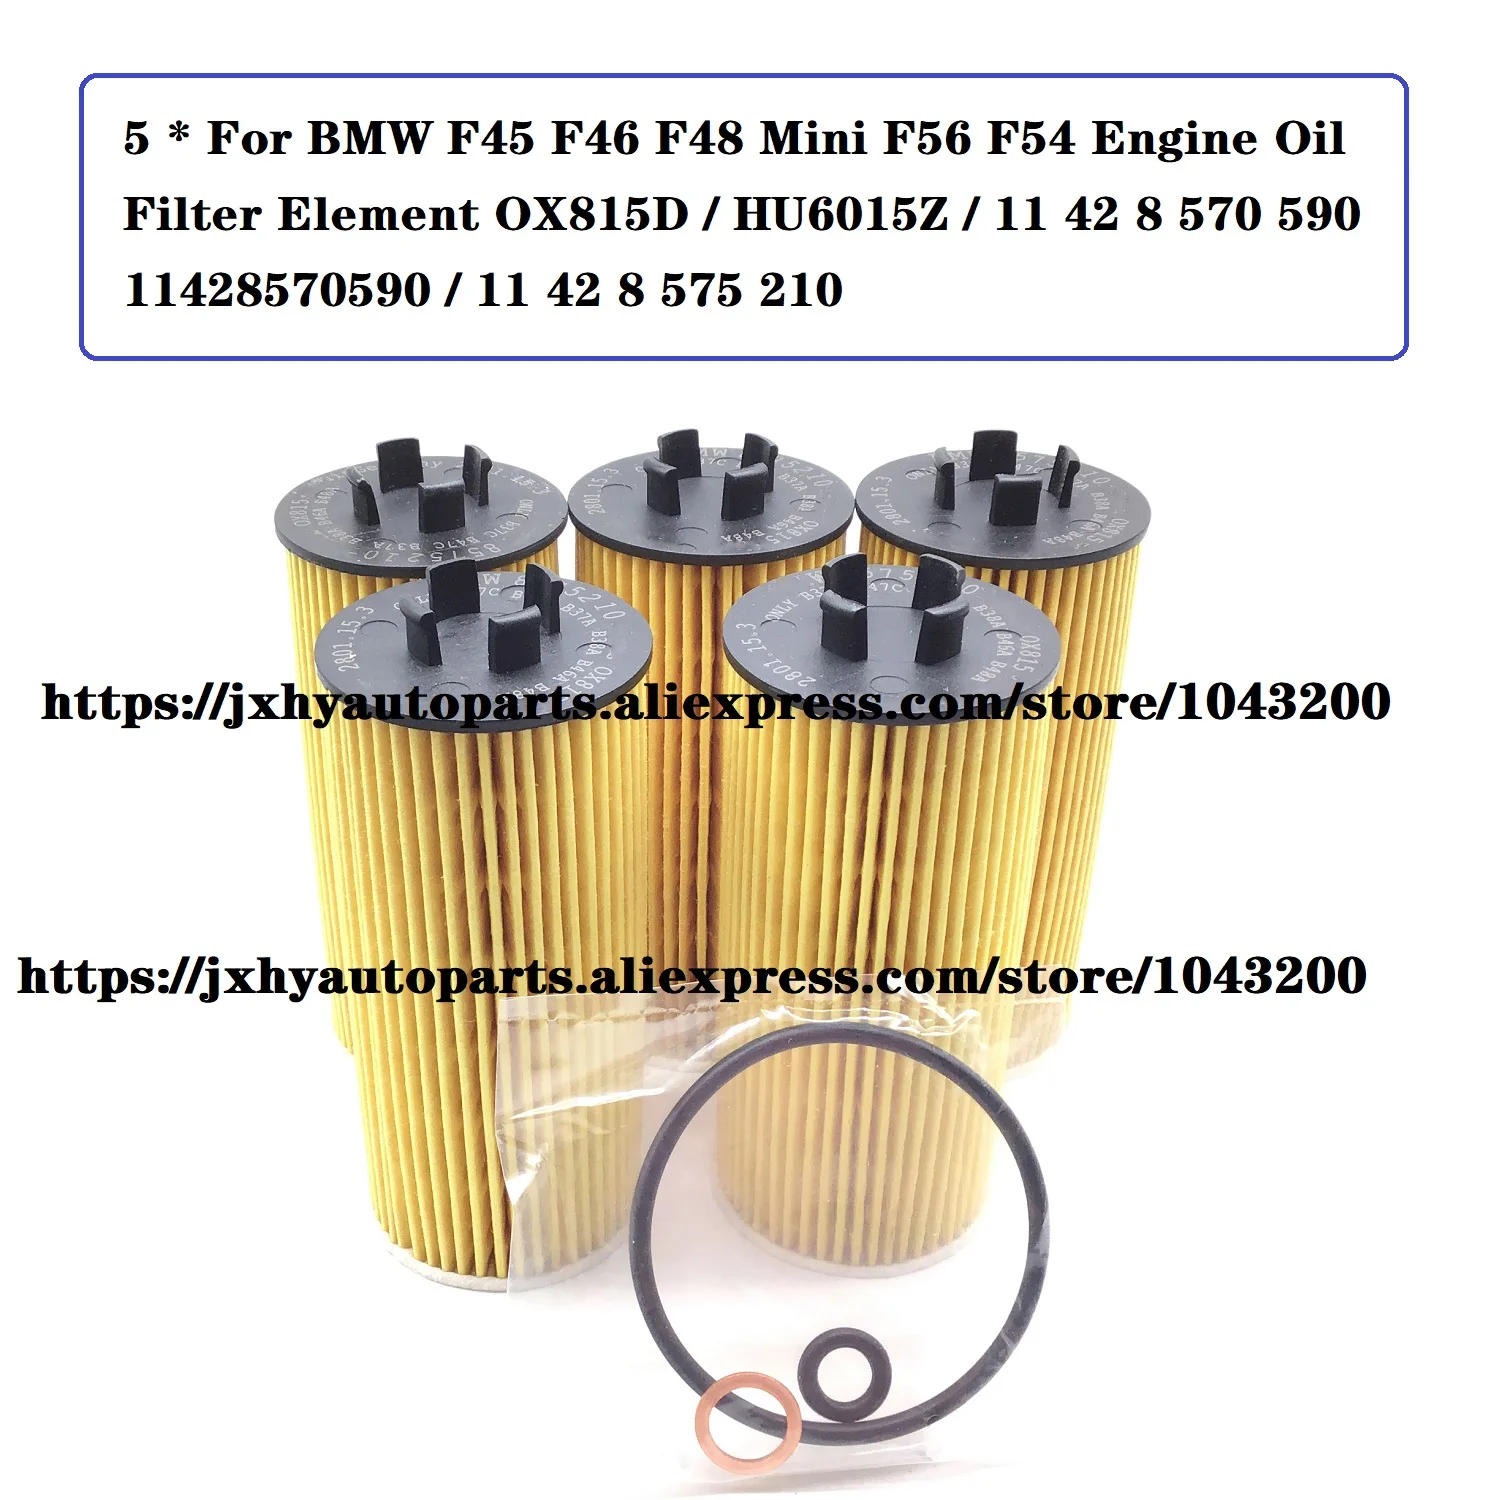 

5 X For BMW F45 F46 F48 Mini F56 F54 Engine Oil Filter OX815D / HU6015Z / 11 42 8 570 590 / 11428570590 / 11 42 8 575 210